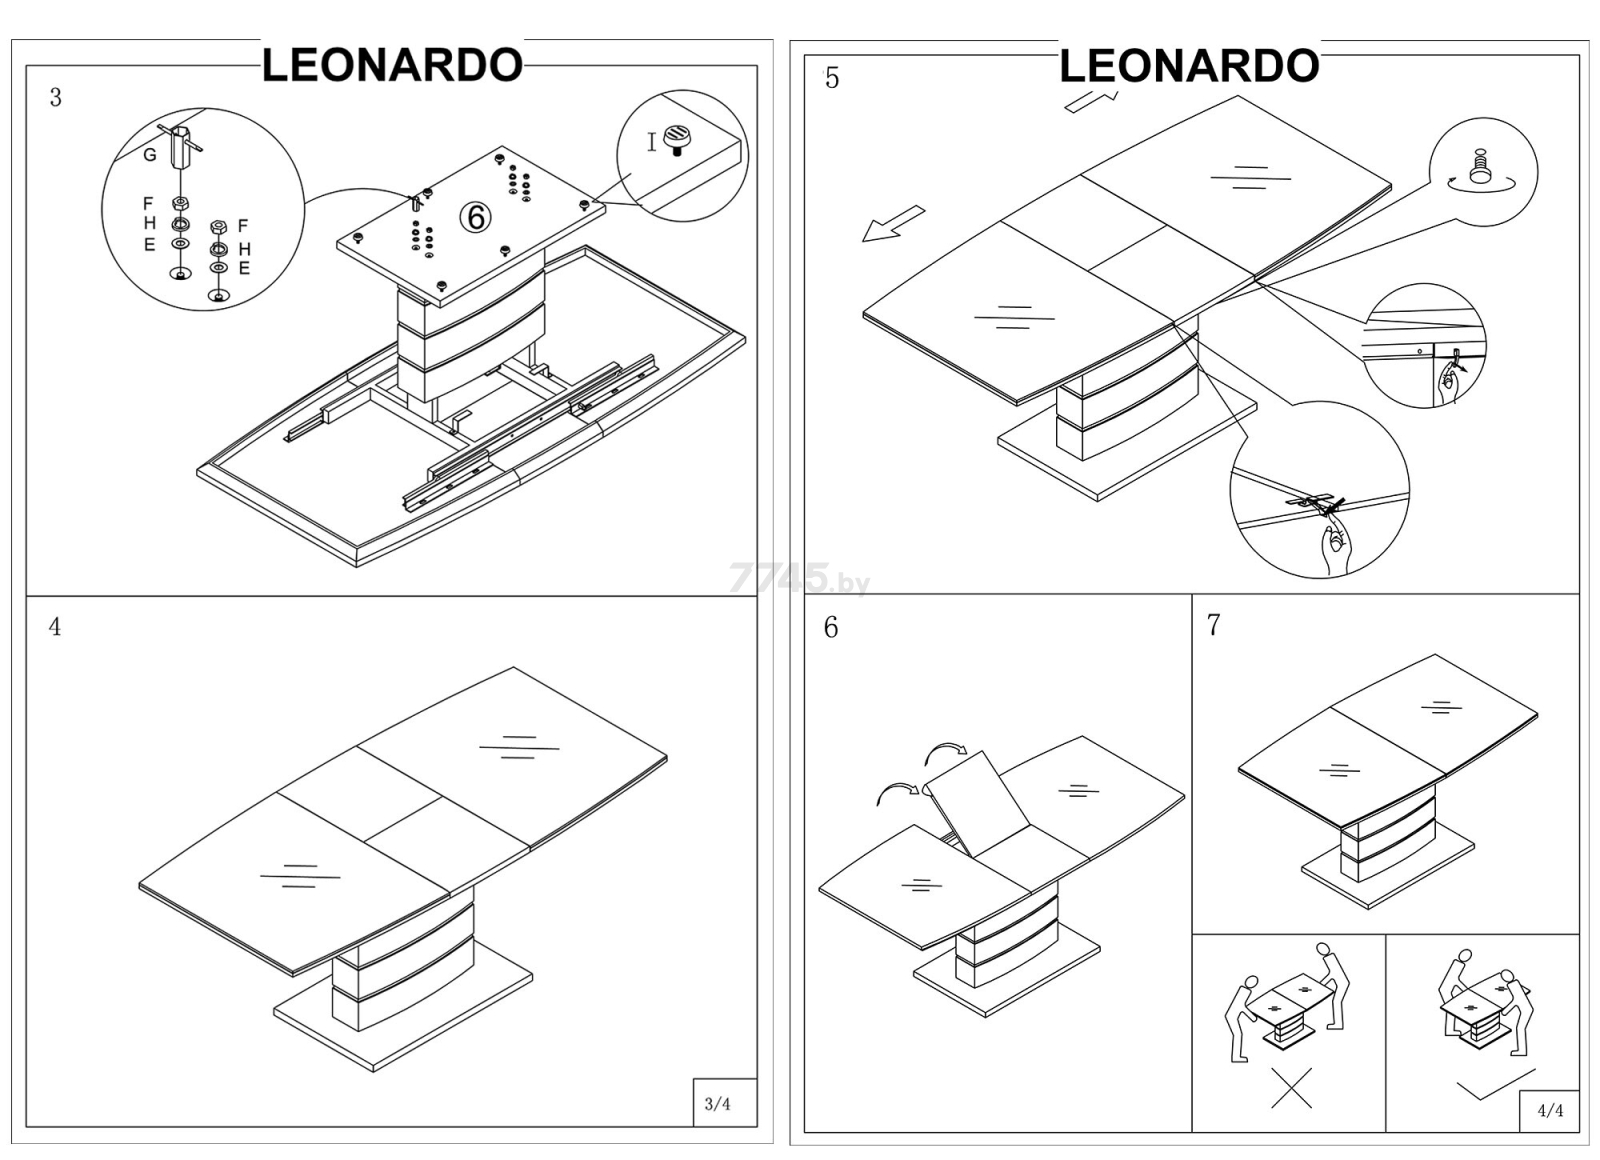 Стол кухонный SIGNAL Leonardo 140 дуб/черный 140-180х80х76 см (LEONARDODD140) - Фото 12